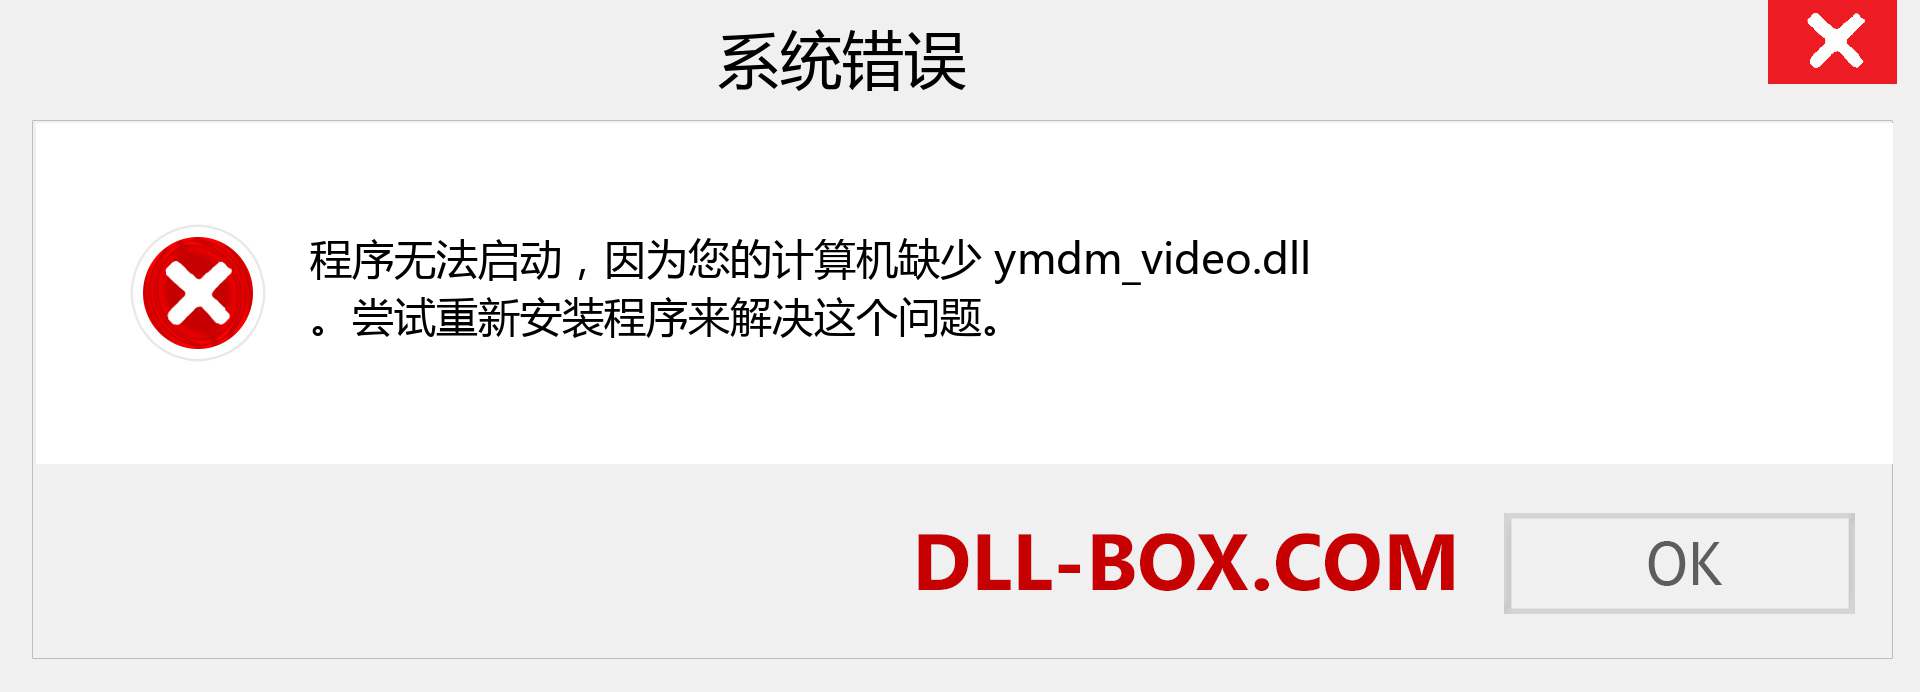 ymdm_video.dll 文件丢失？。 适用于 Windows 7、8、10 的下载 - 修复 Windows、照片、图像上的 ymdm_video dll 丢失错误